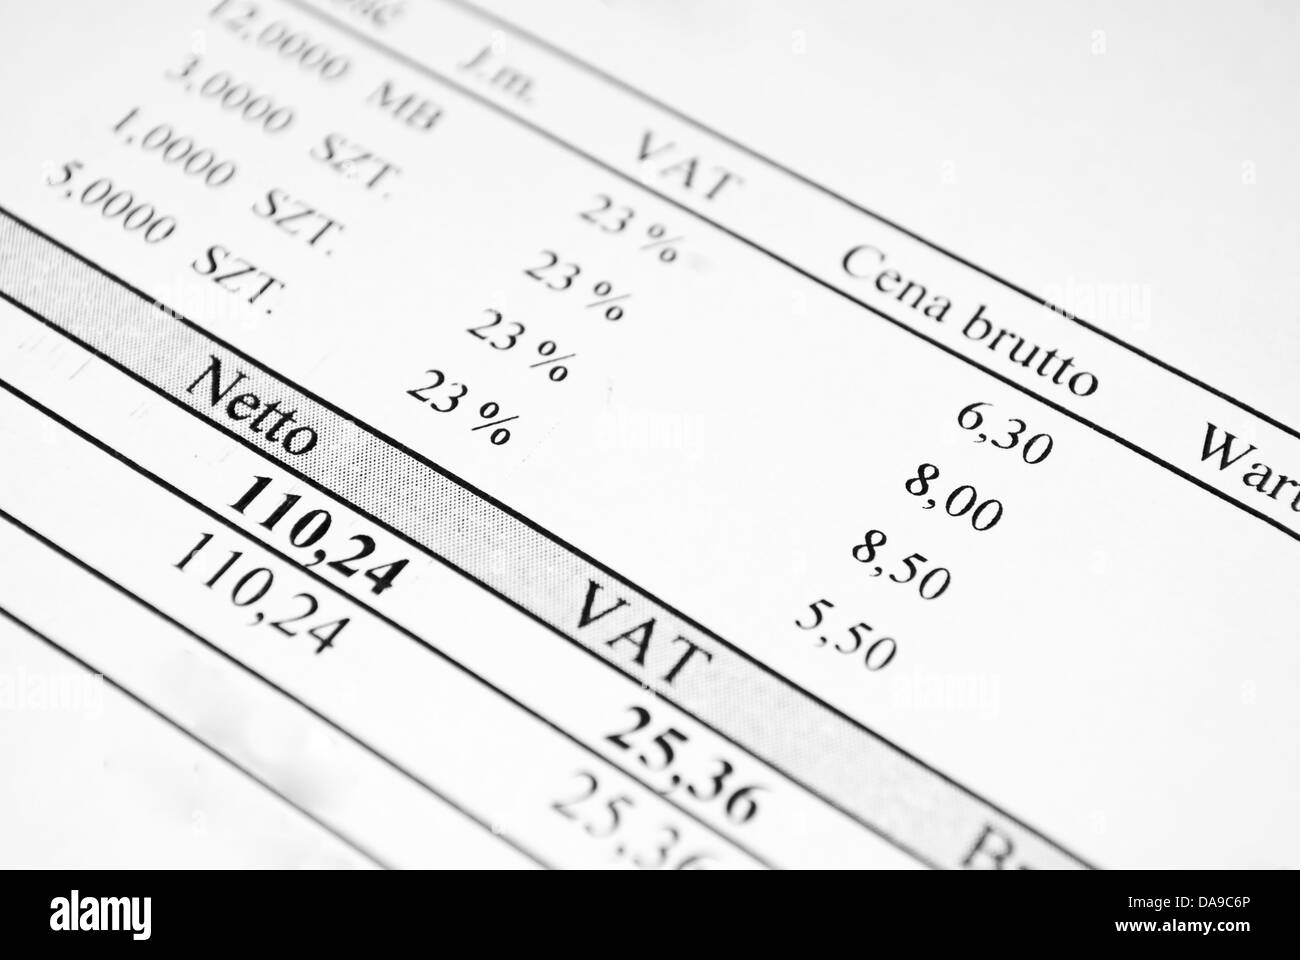 Rechnung-Mappe mit Brutto- und Netto-Preise und Mehrwertsteuer Steuerwert Stockfoto